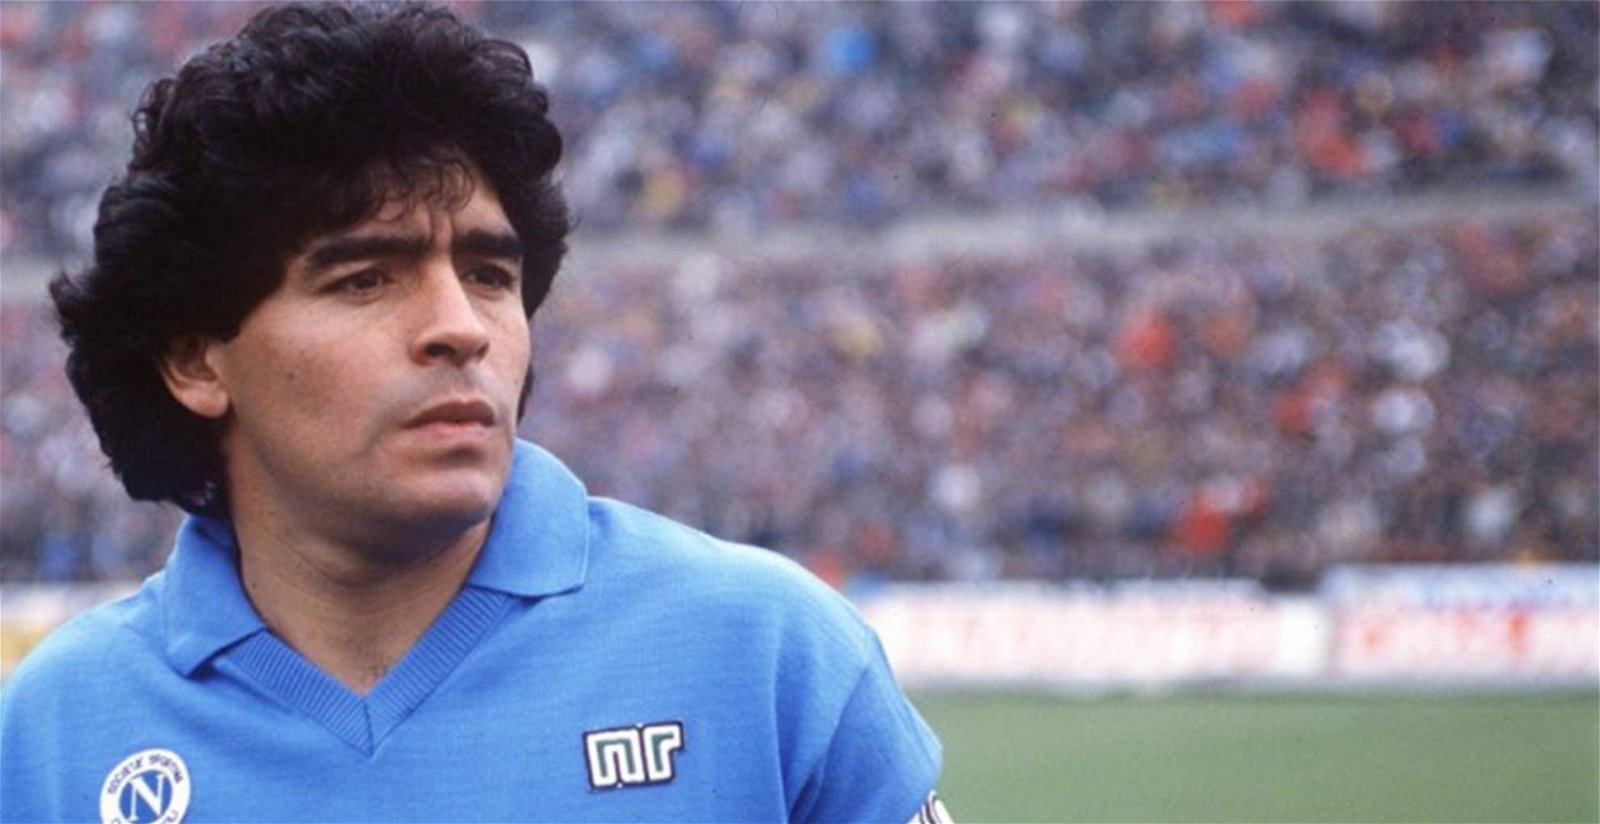 Diego Maradona 2019 film